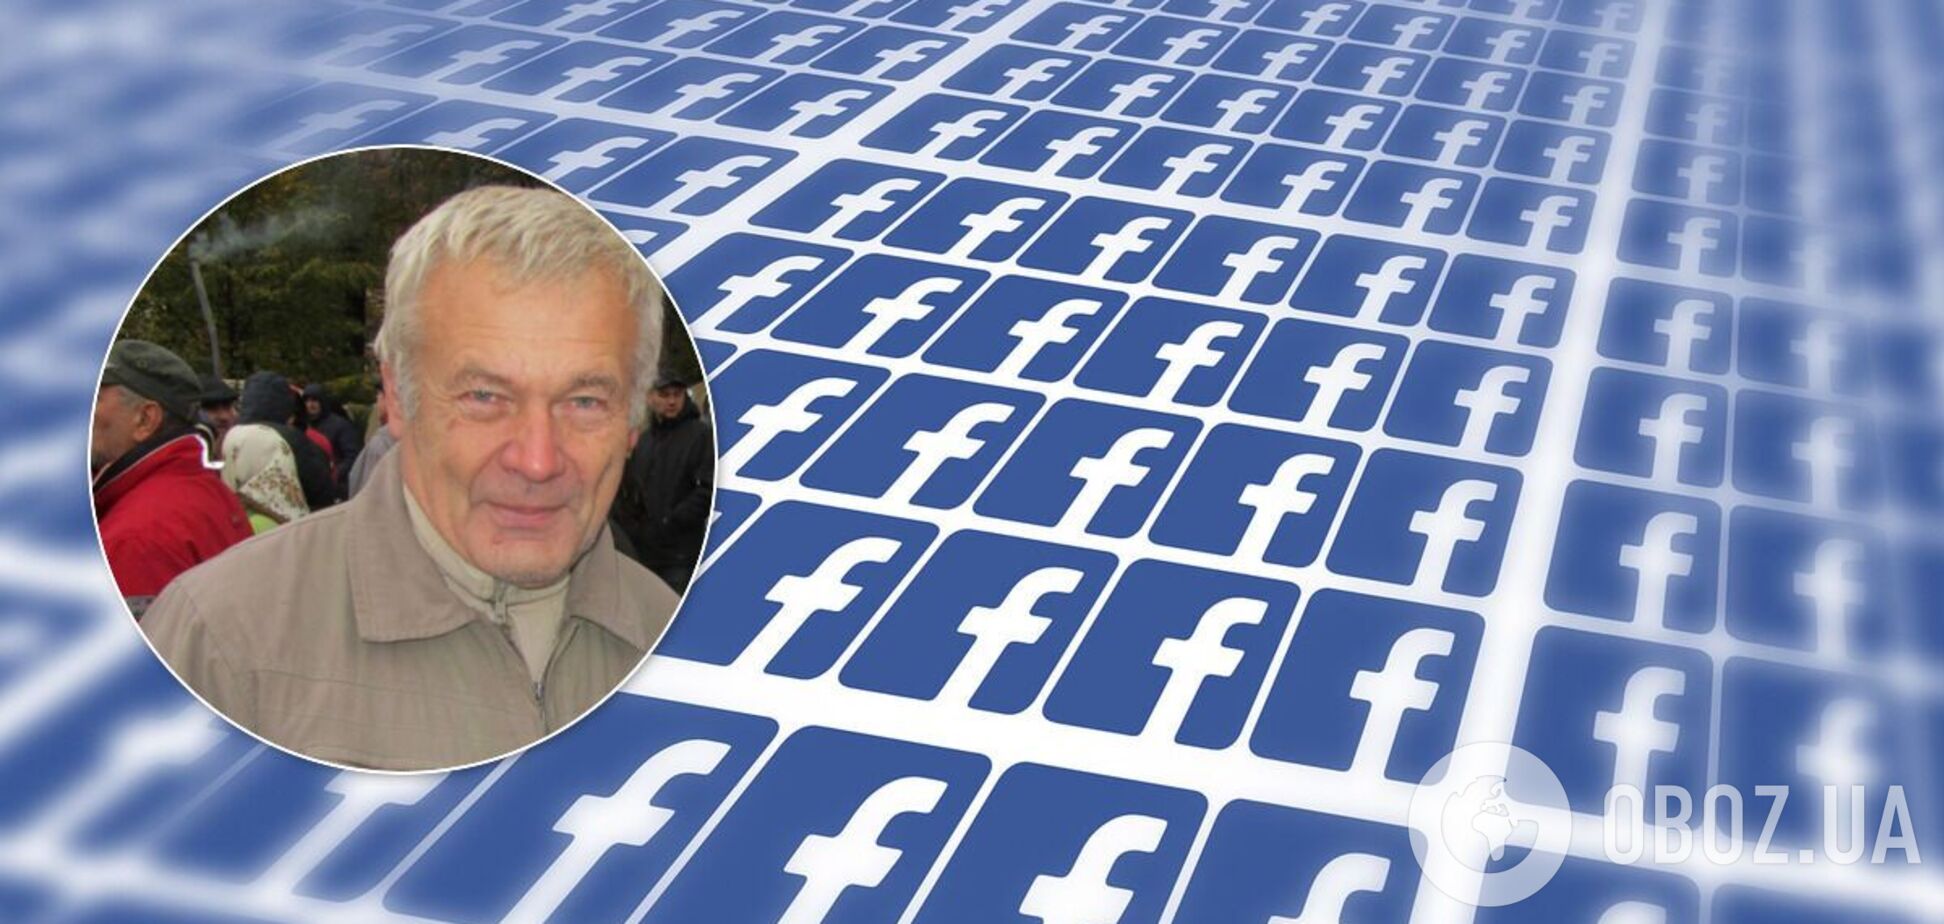 Пенсионеру из Чигирина грозит три года тюрьмы за публикацию в интернете